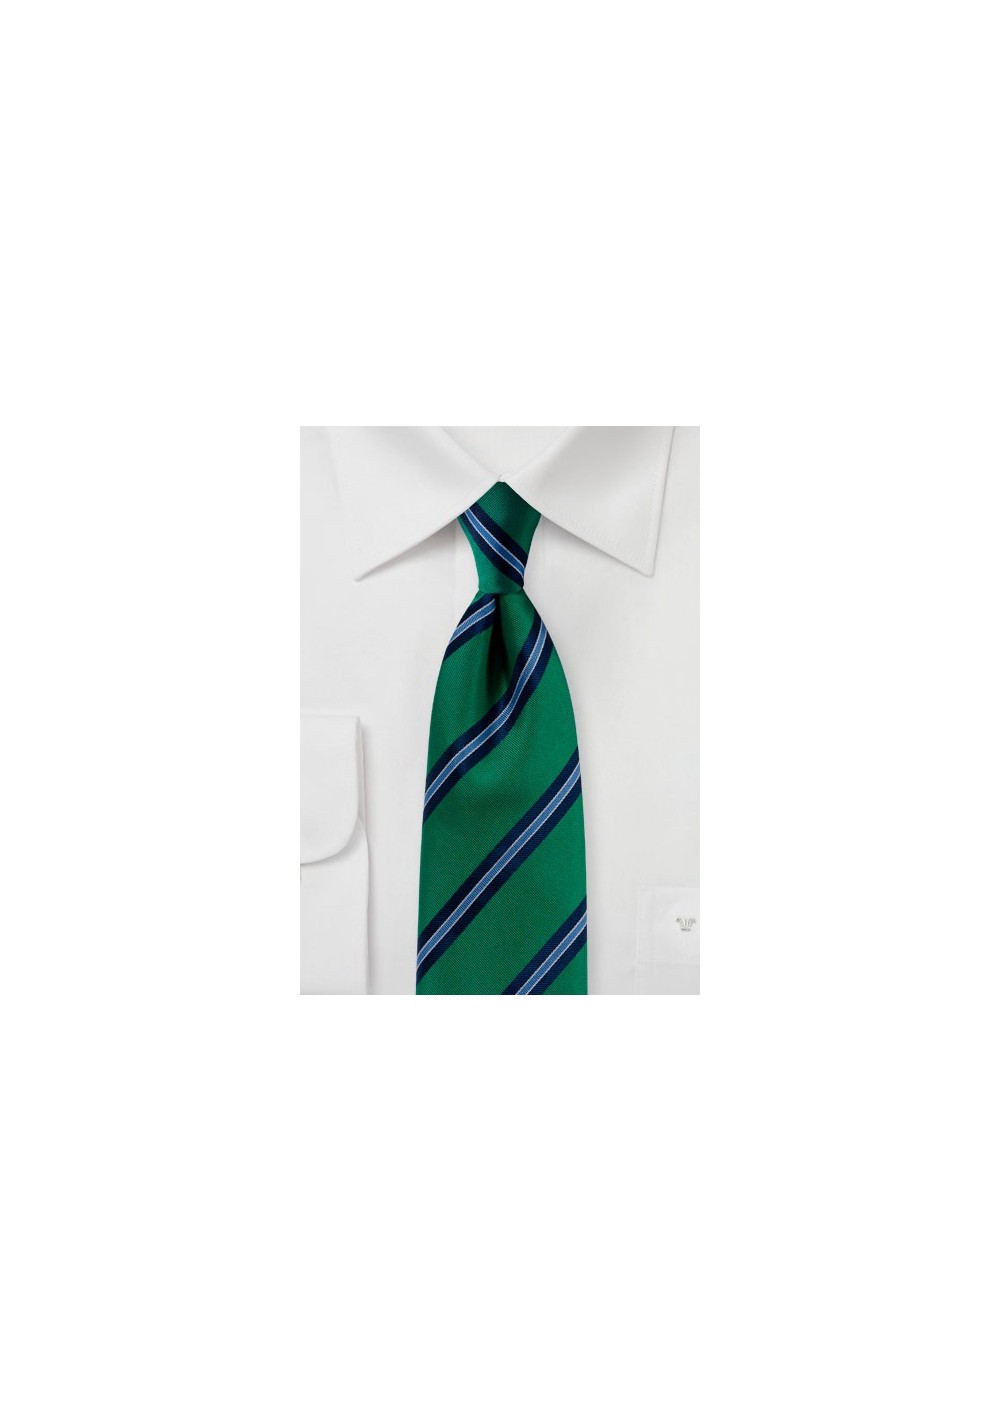 Matte Woven Striped Tie in Kelly Green